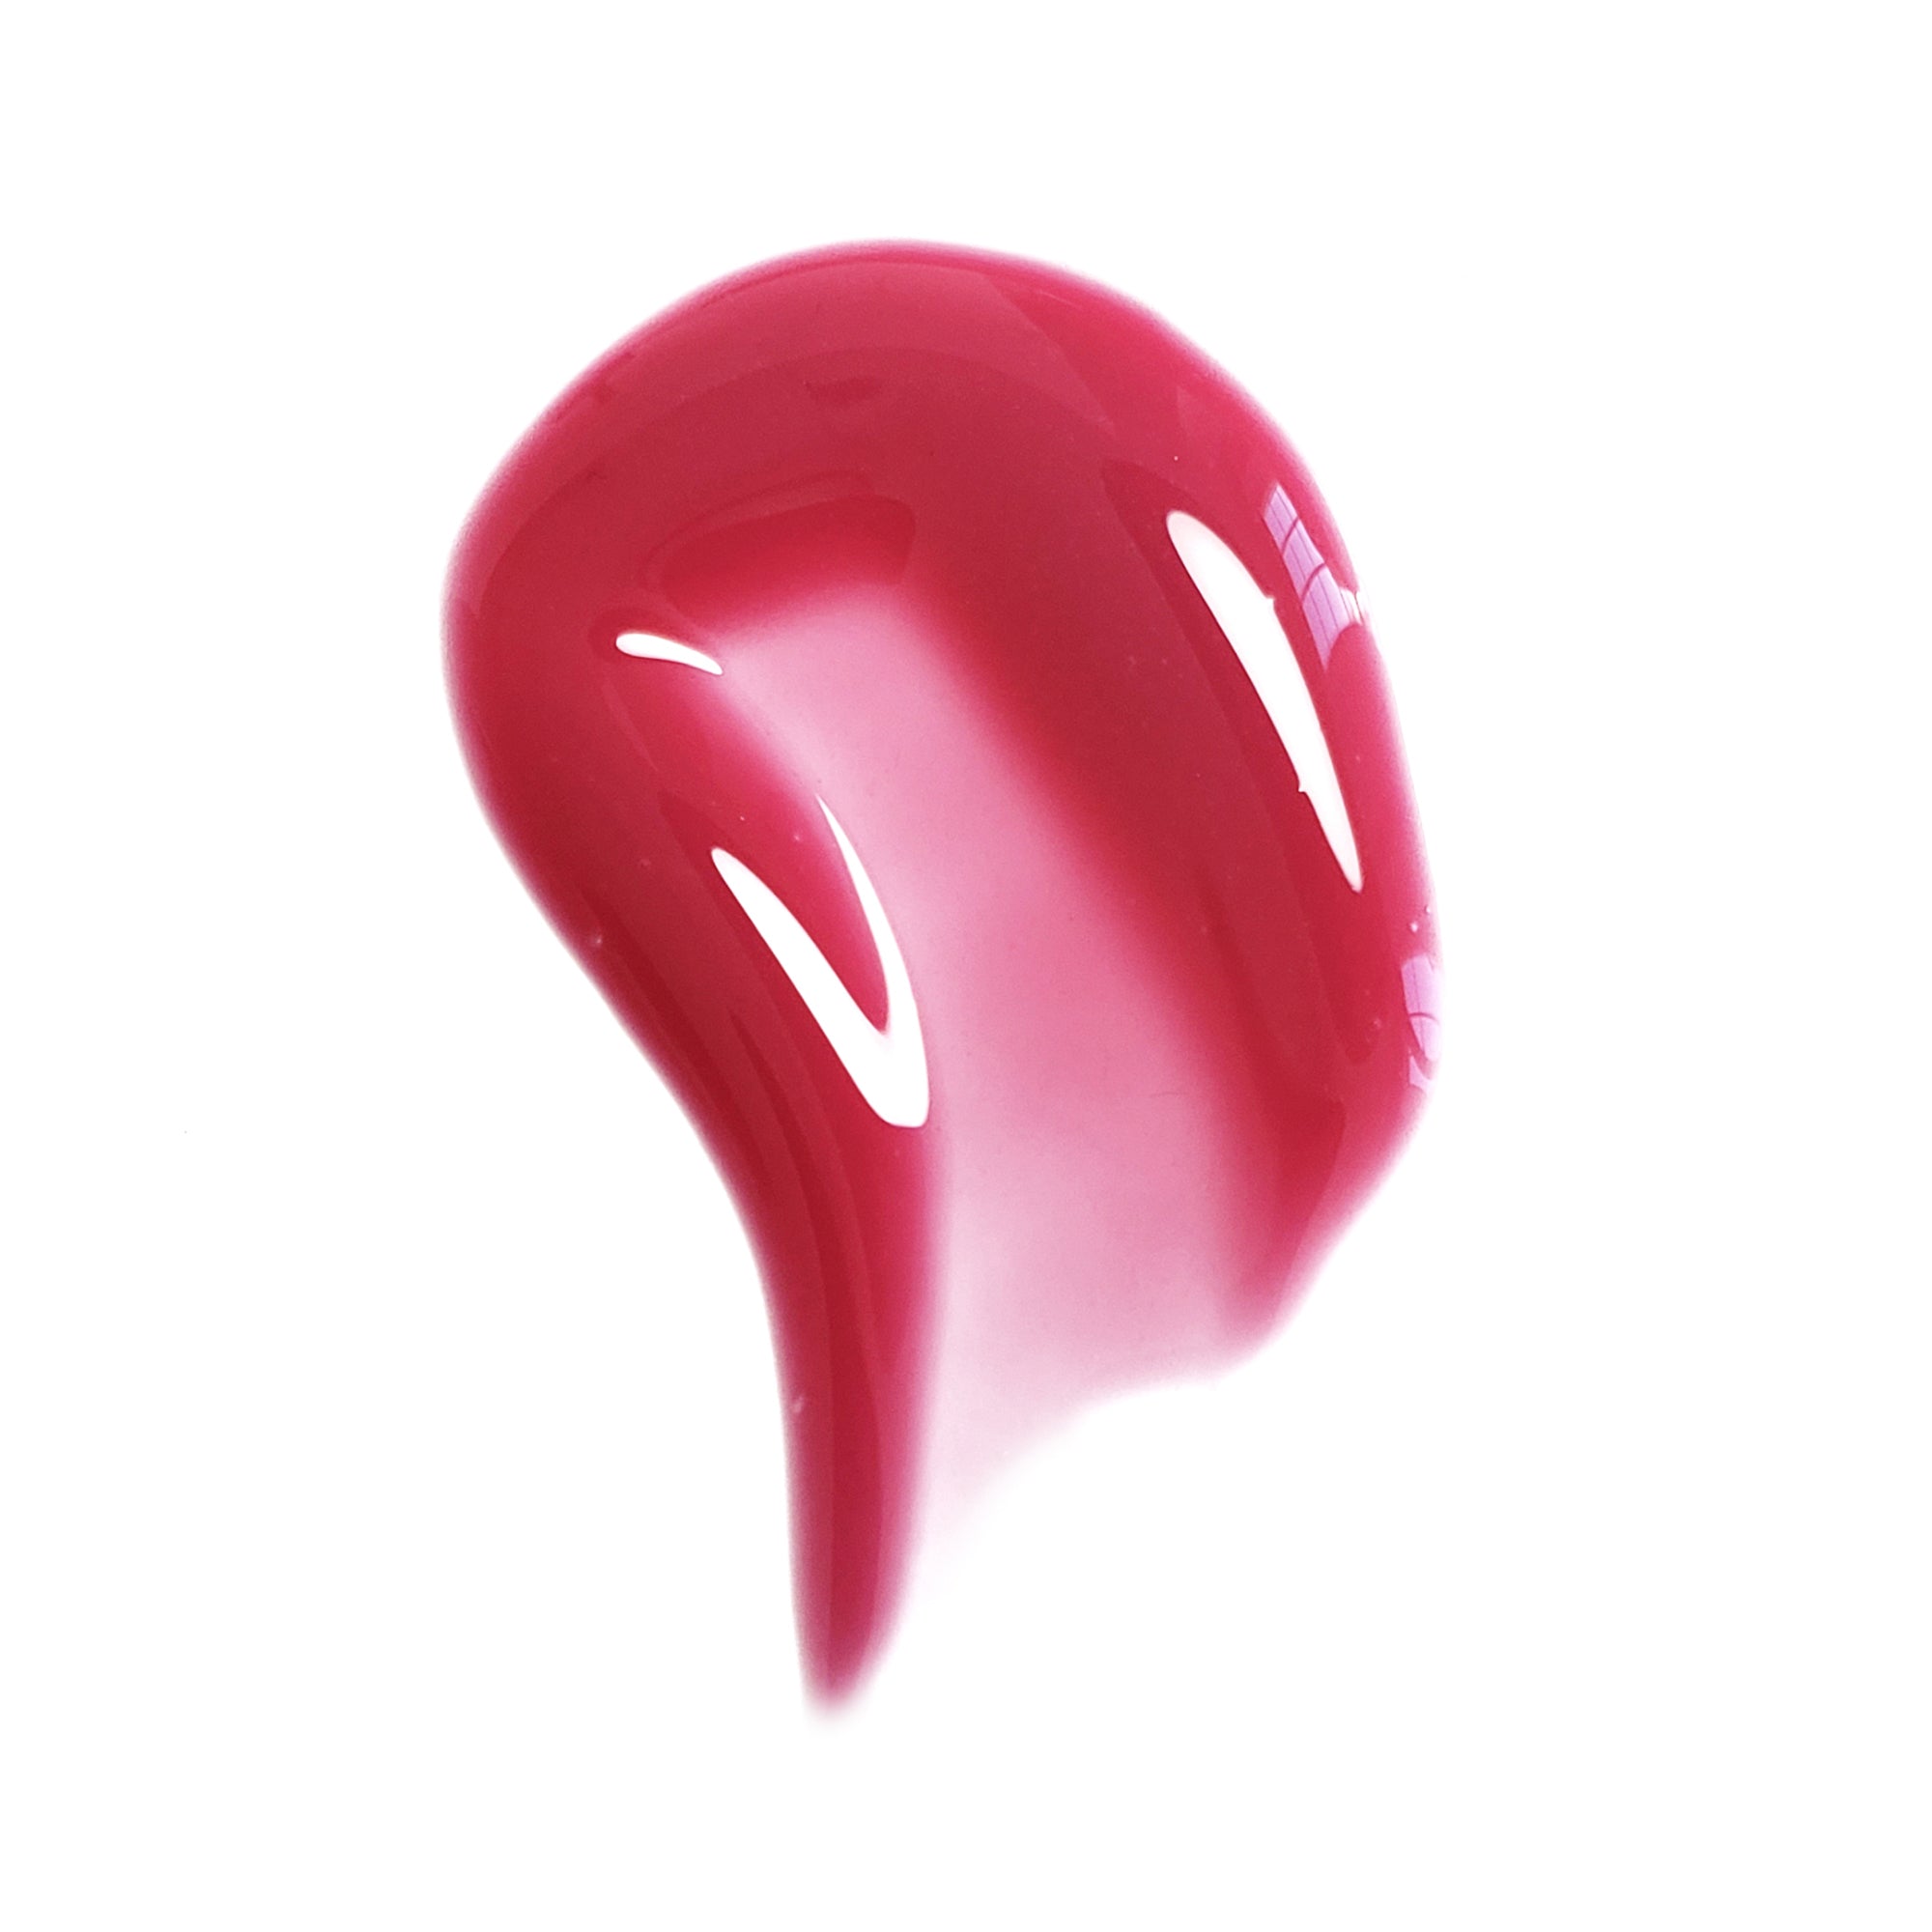 Westman Atelier Squeaky Clean Liquid Lip Balm Ma Puce